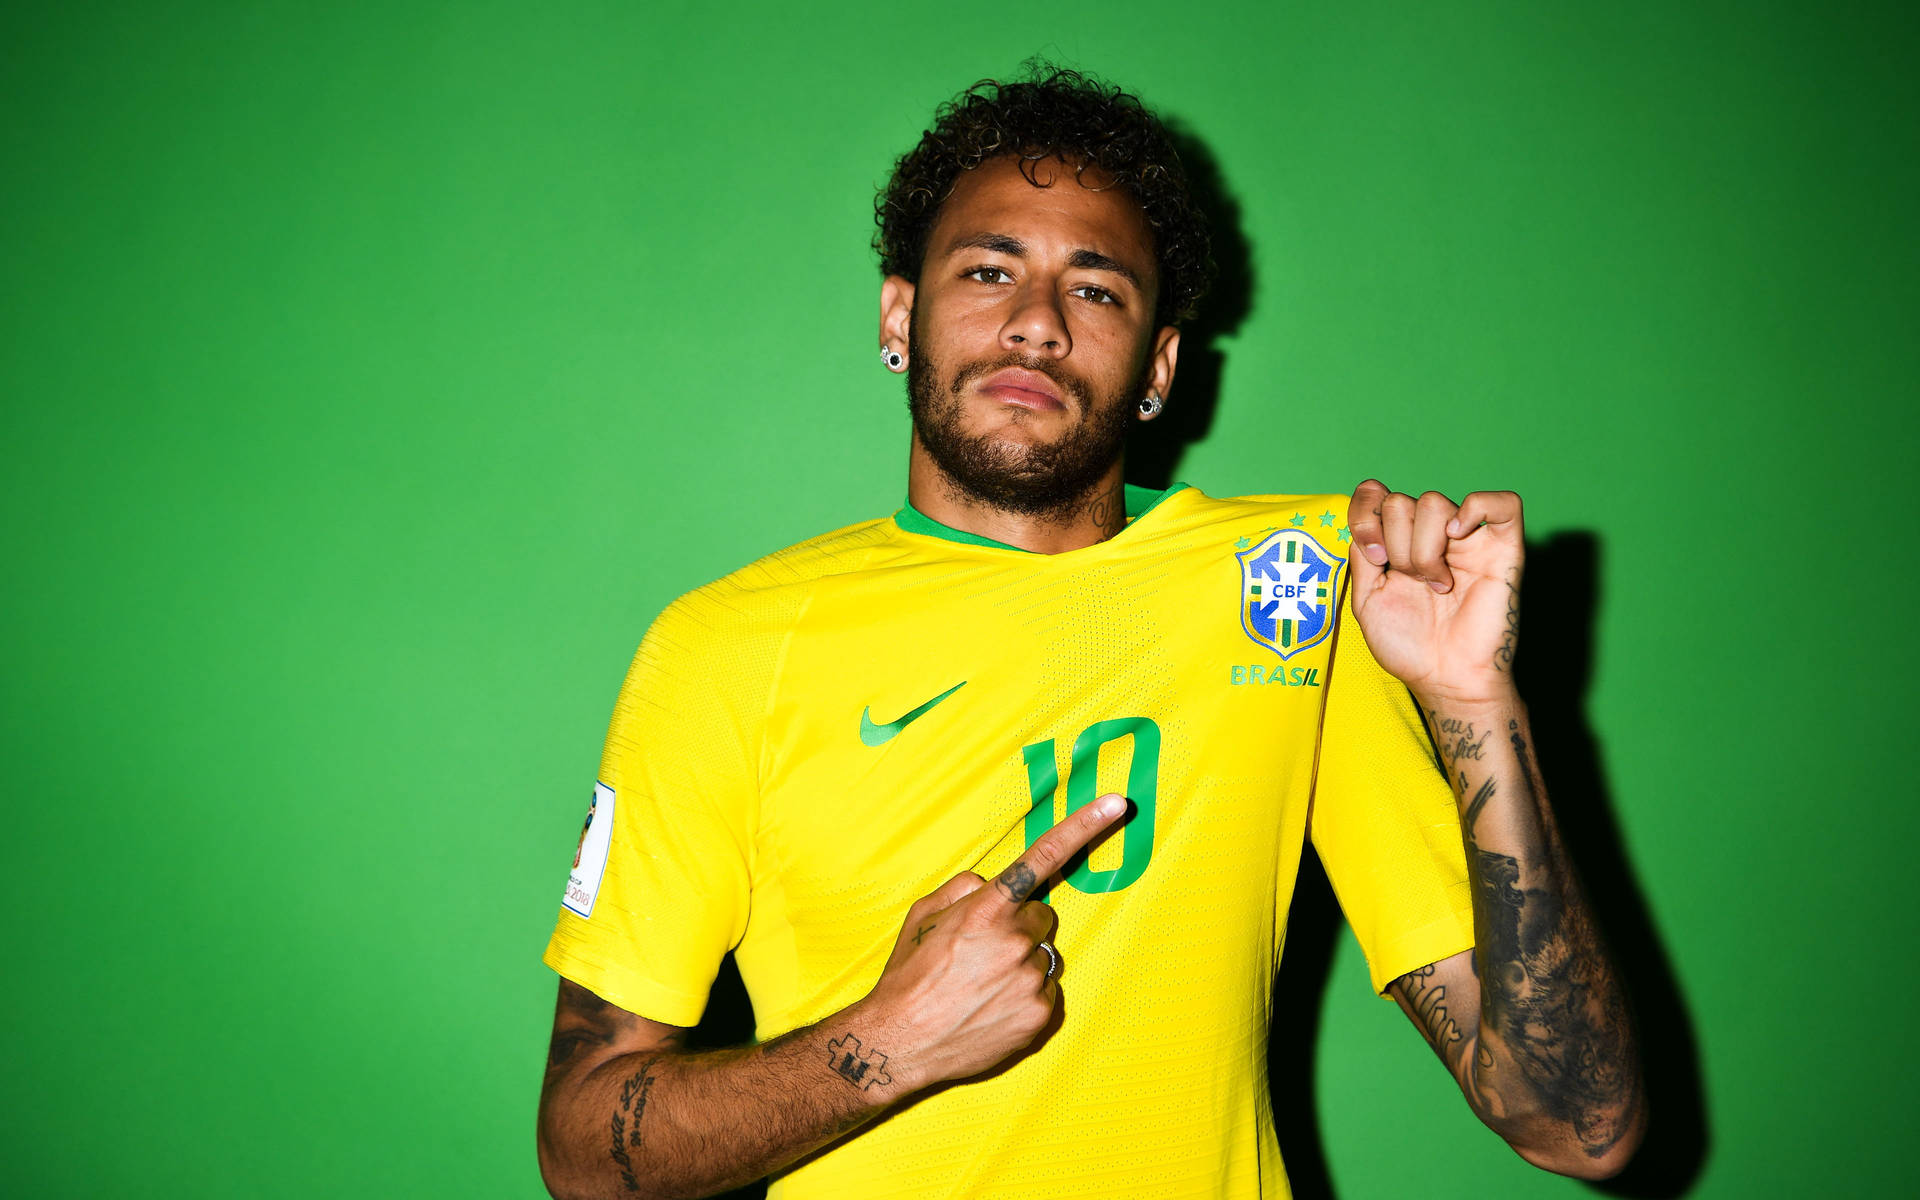 Brasilianischenationalmannschaft Neymar, Der Sein Trikot Spannt Wallpaper